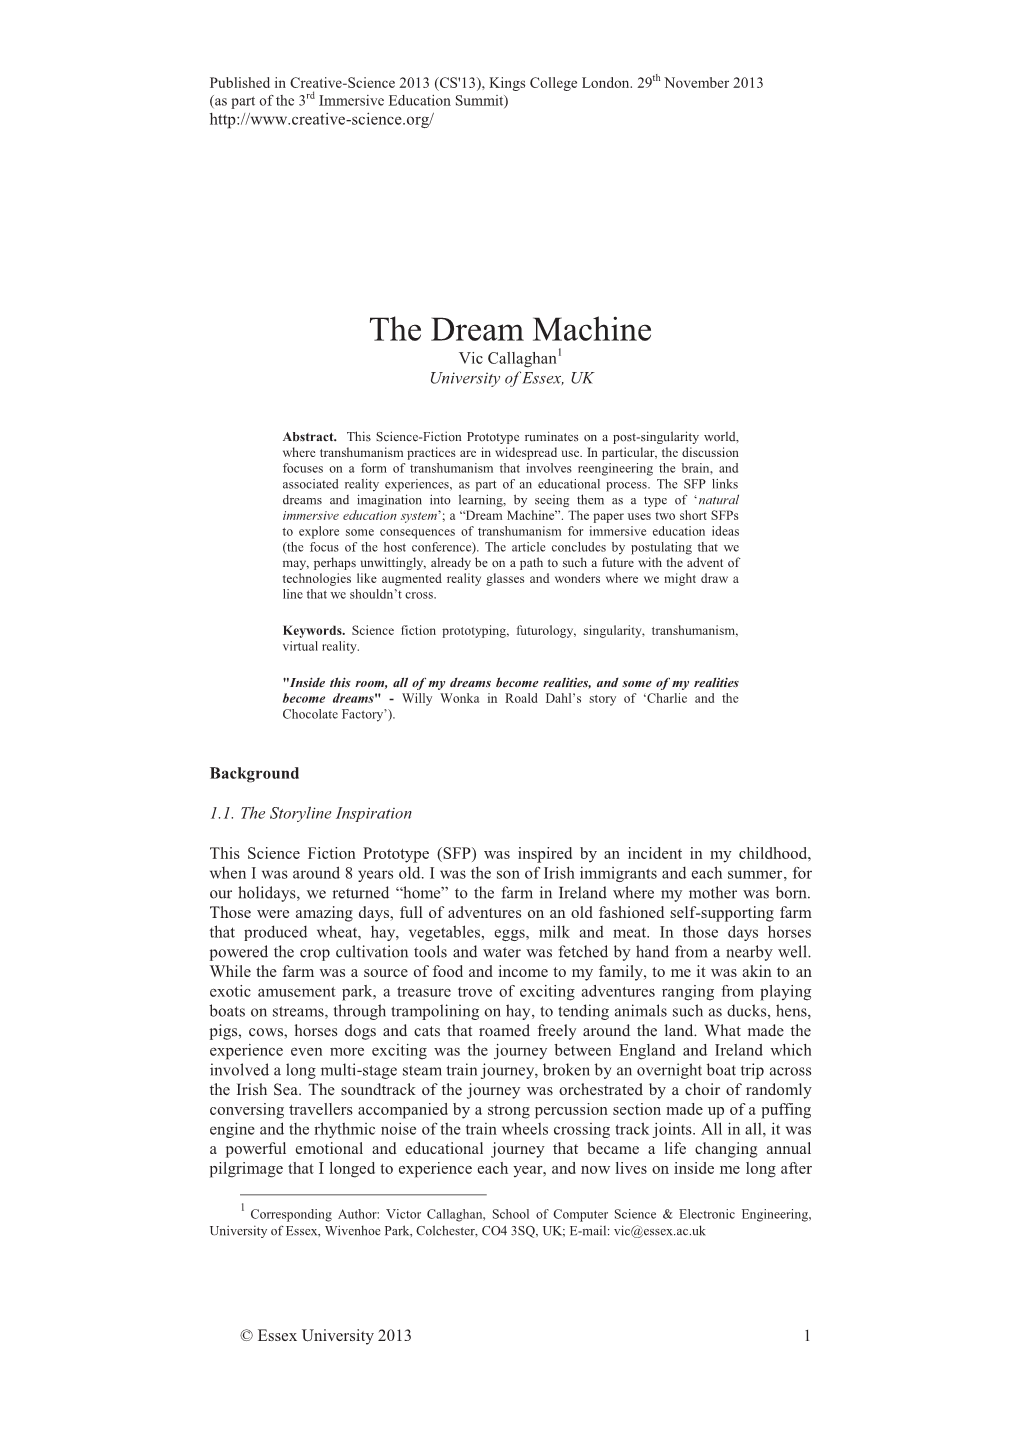 The Dream Machine Vic Callaghan1